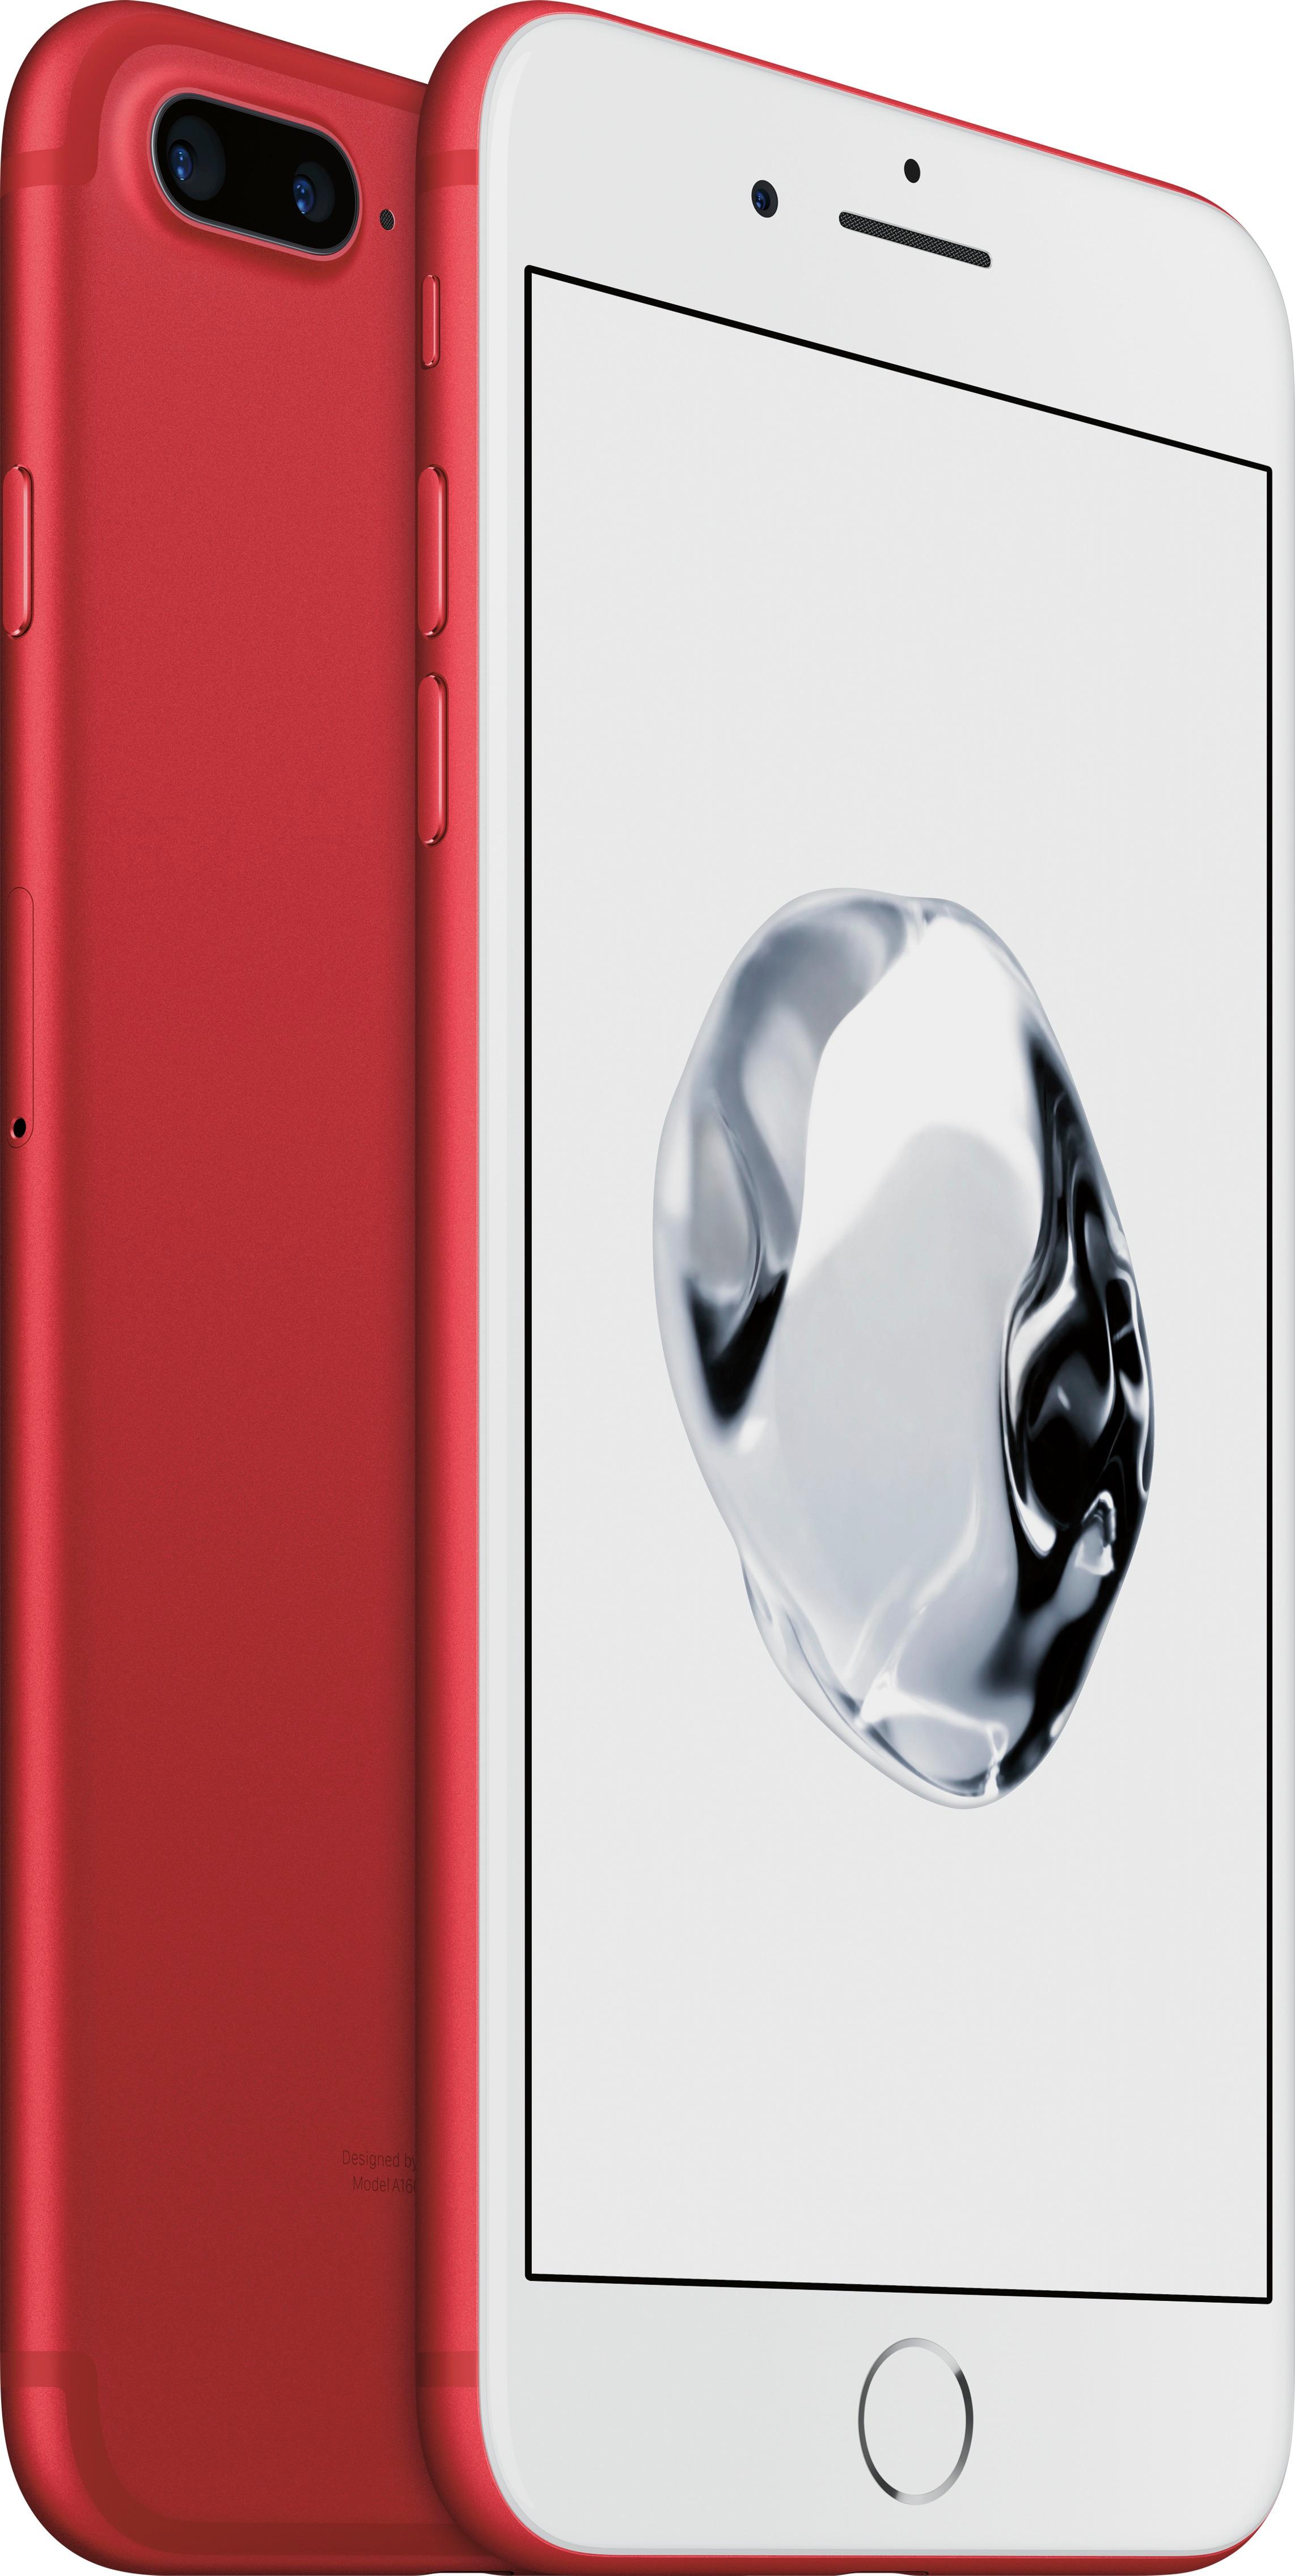 スマートフォン/携帯電話 スマートフォン本体 Best Buy: Apple iPhone 7 Plus 256GB (PRODUCT)RED (AT&T) MPR52LL/A